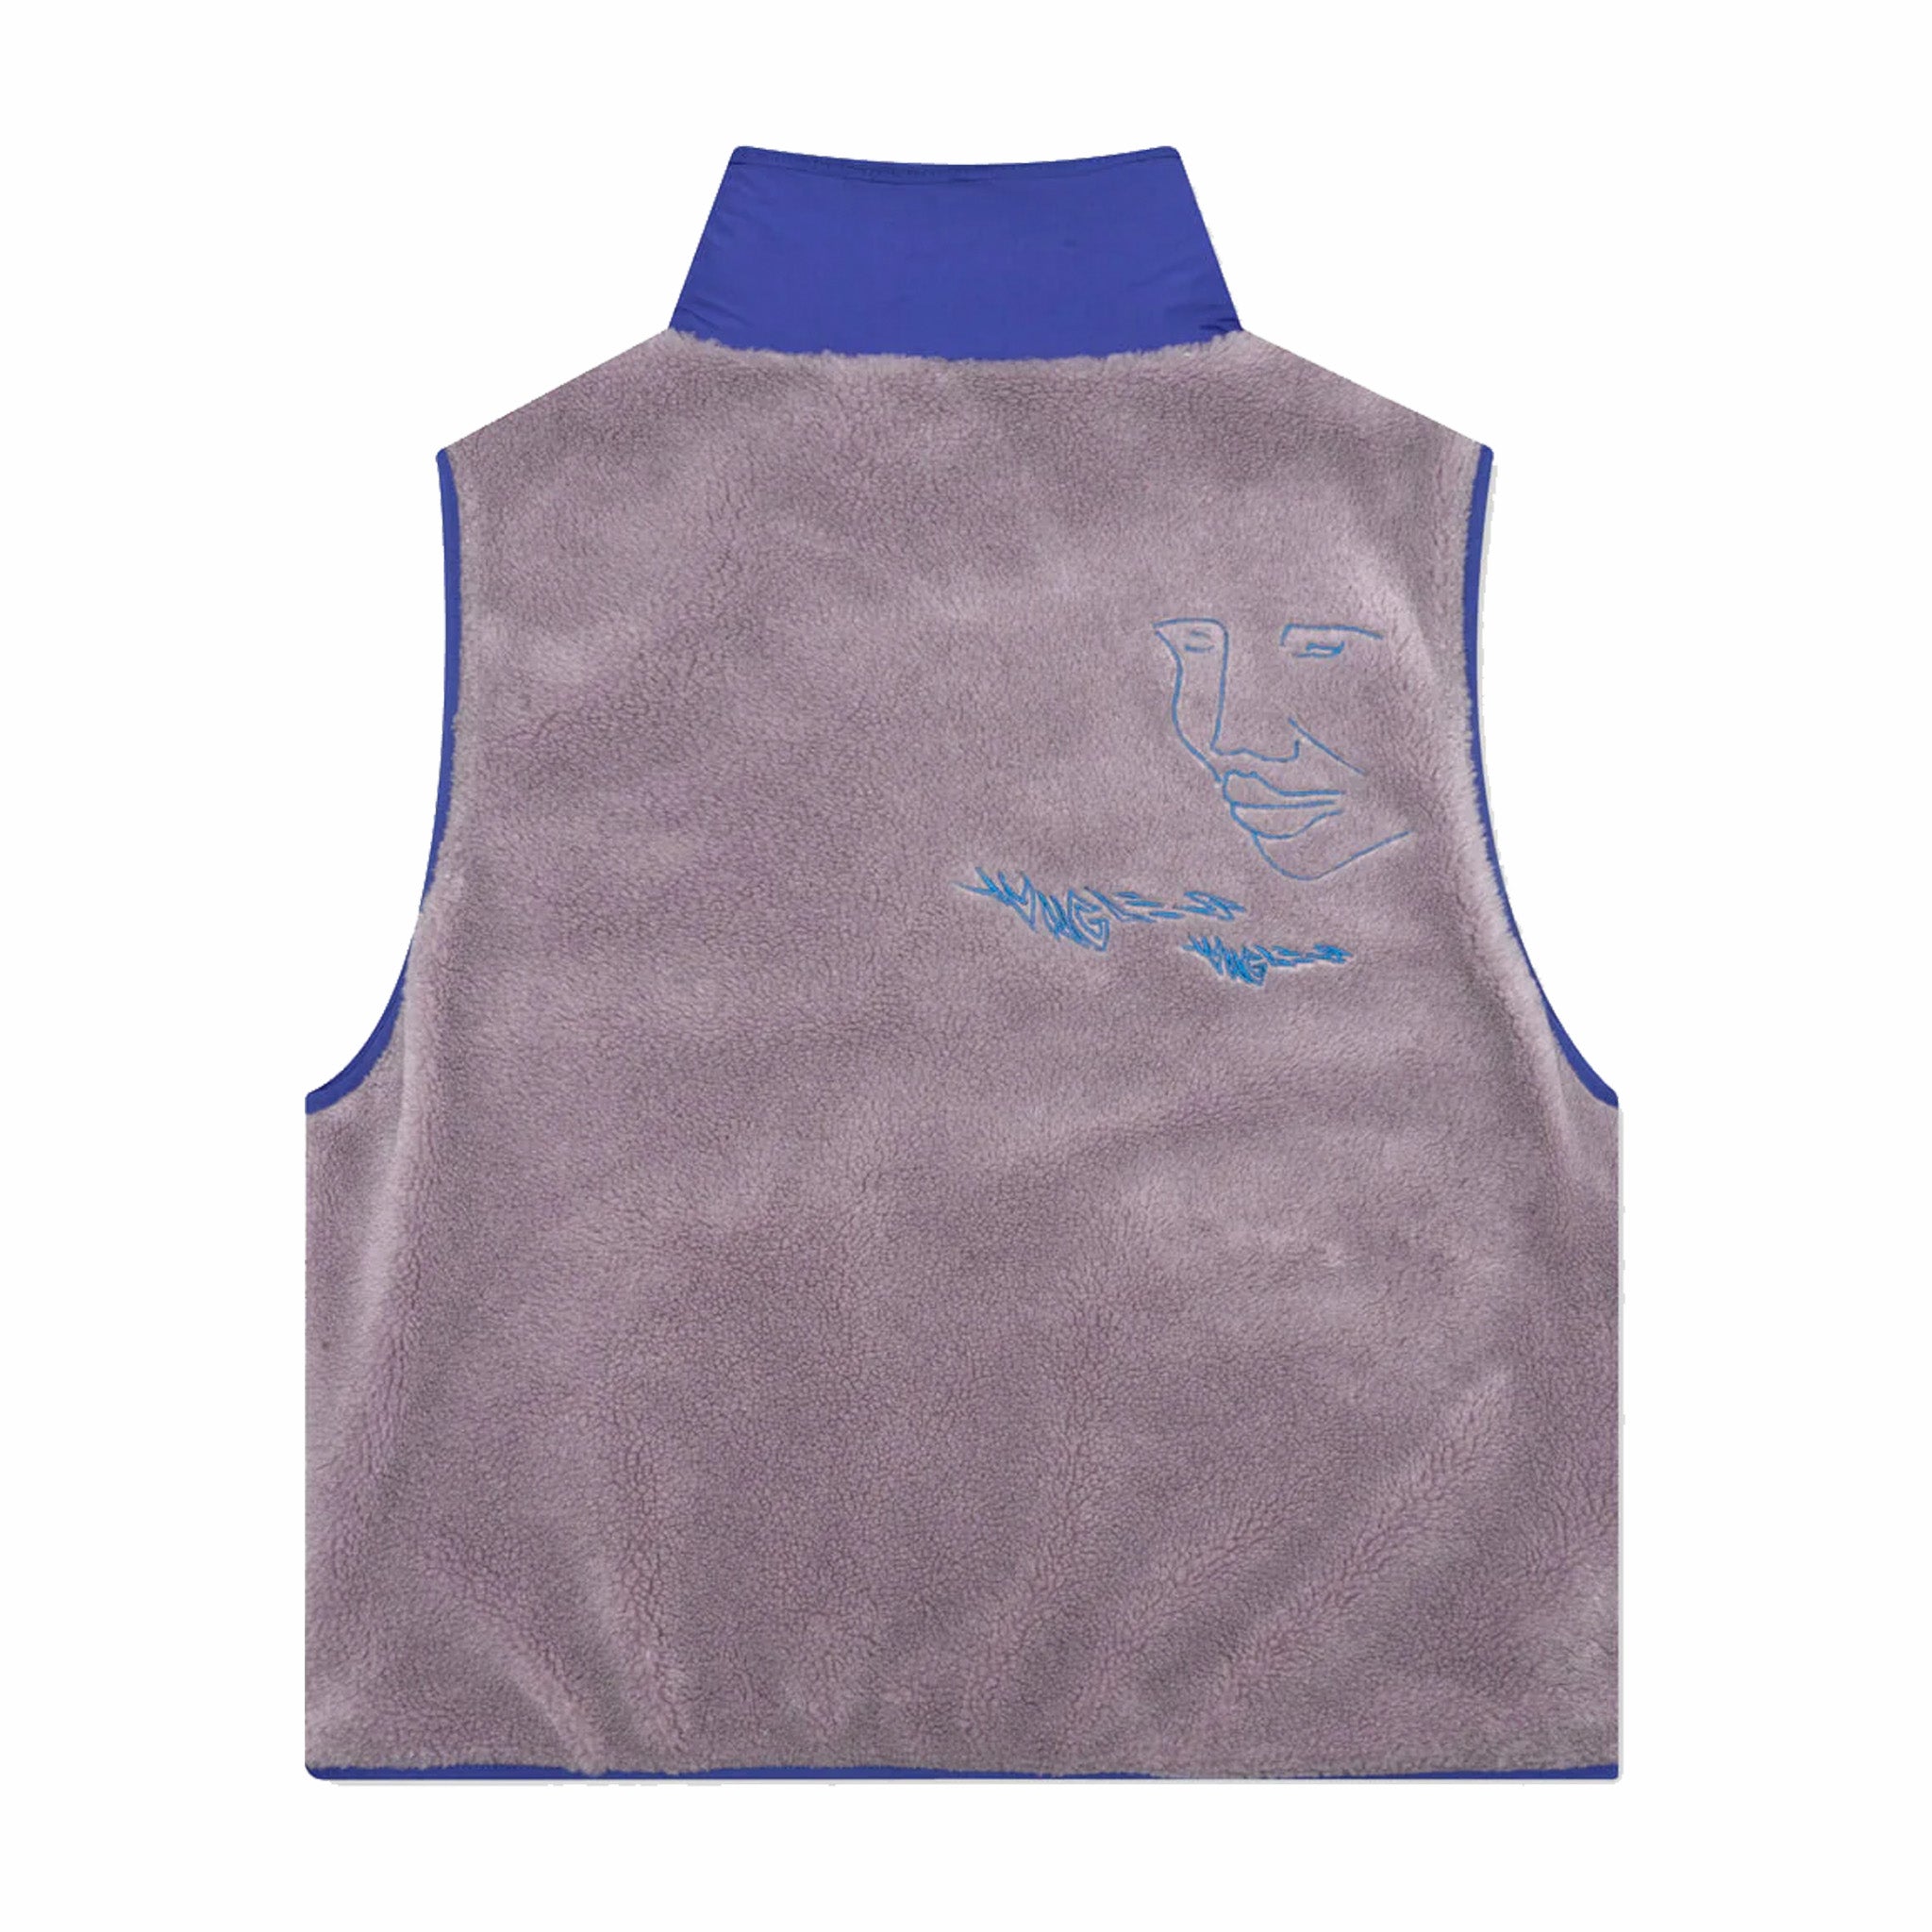 Jungles Fuzzy Vest (Brown/Blue) - August Shop